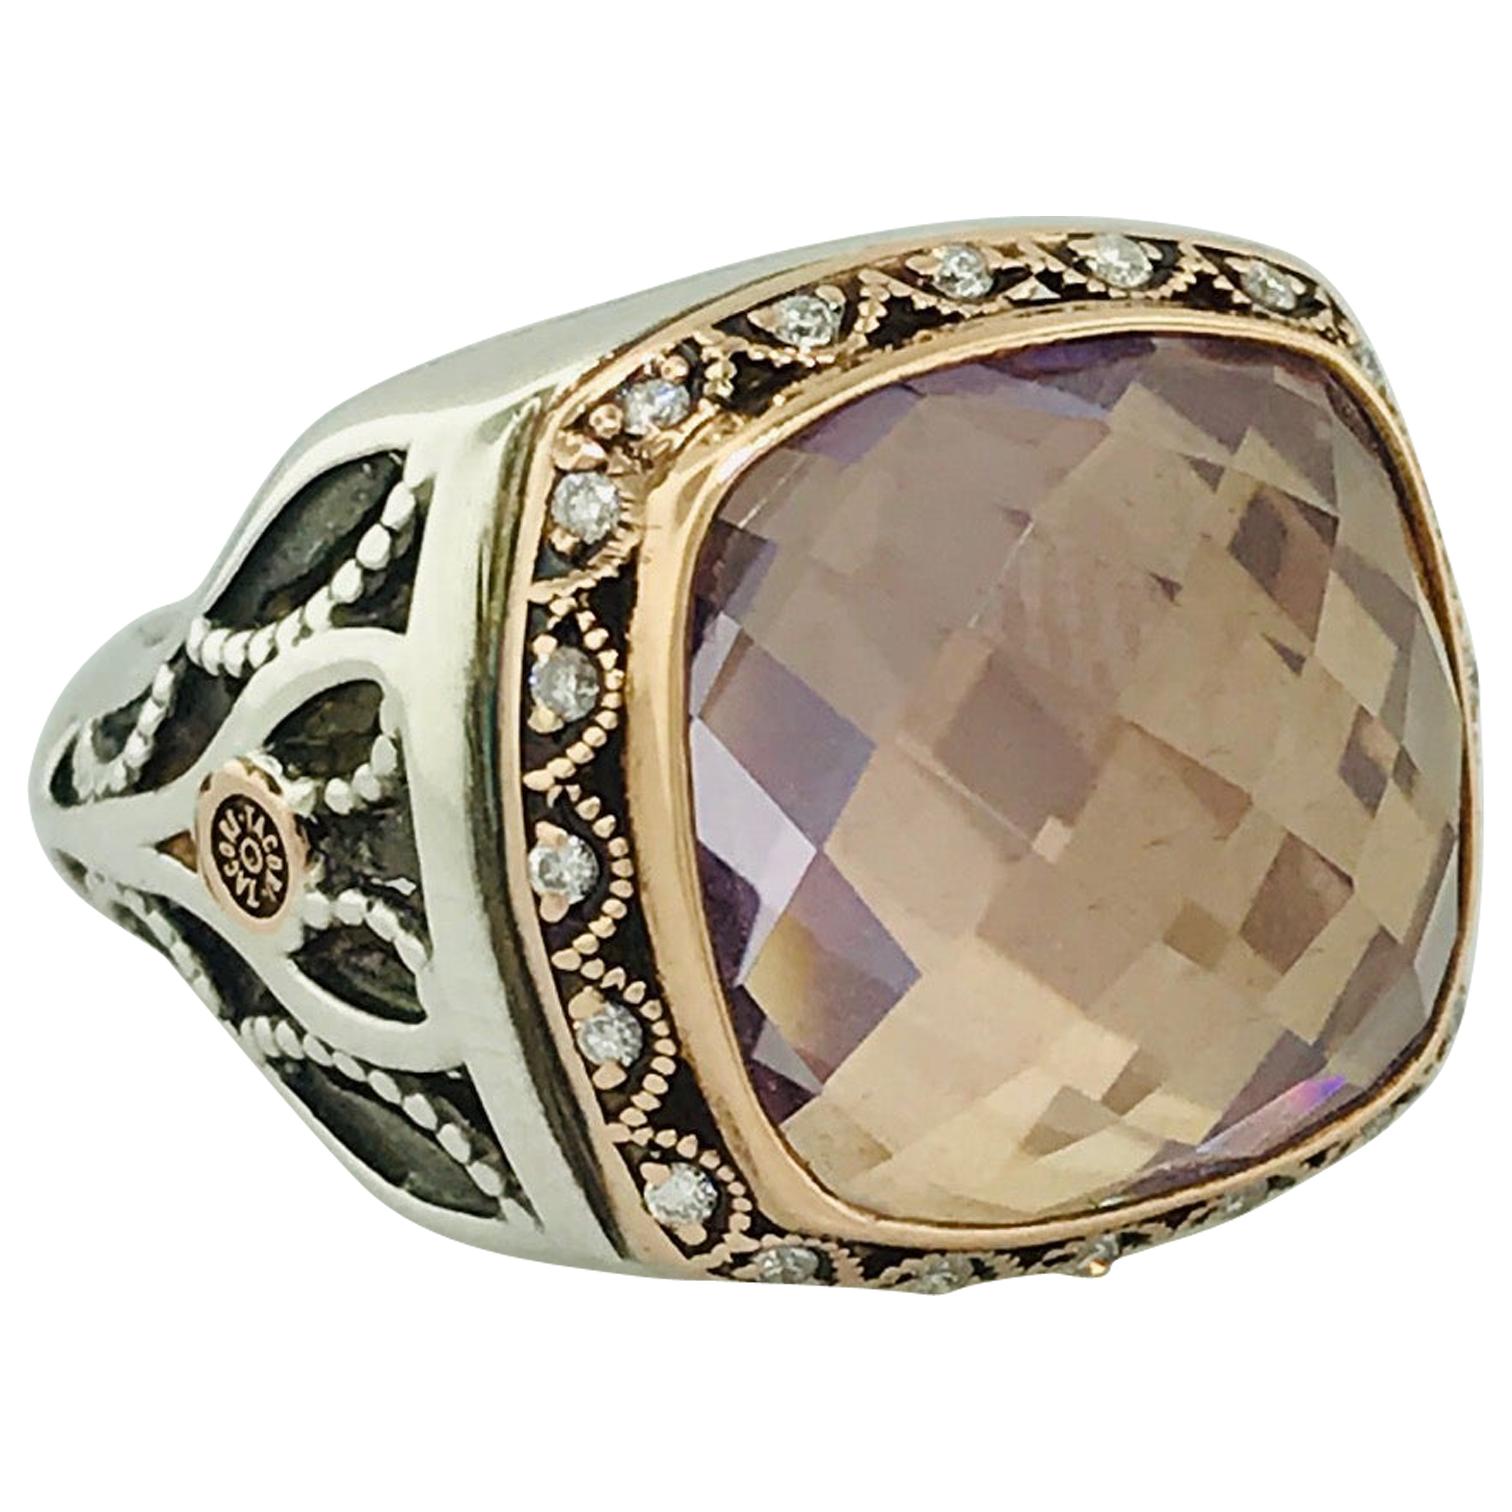 Tacori Rose de France Amethyst 18 Karat Gold and Sterling Silver Ring SR104P13 For Sale